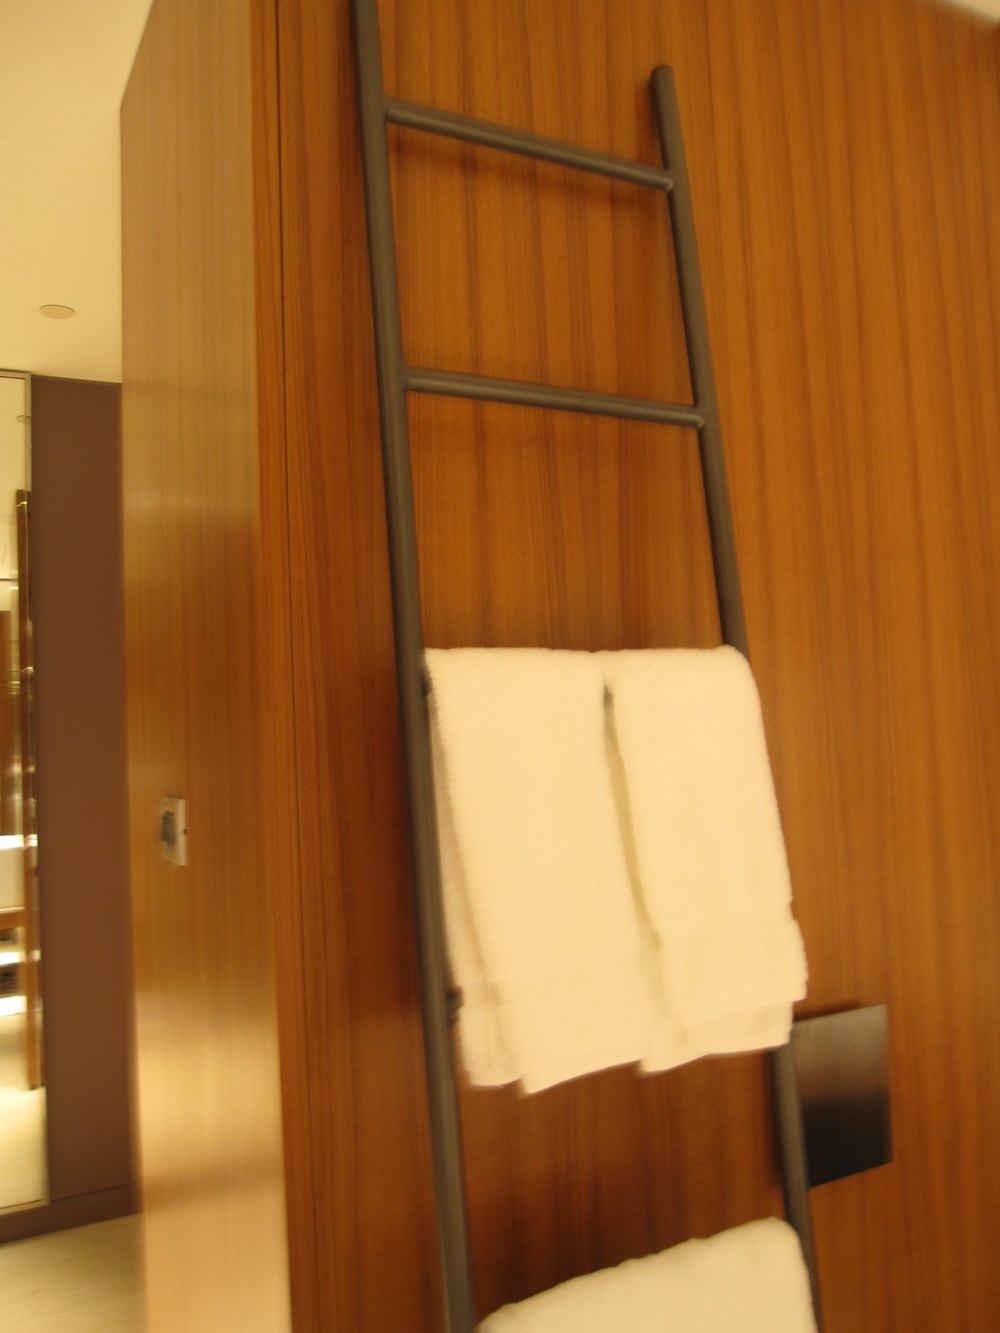 台北W酒店(W hotel  taipei)2012.05.24第五页更新_097.jpg